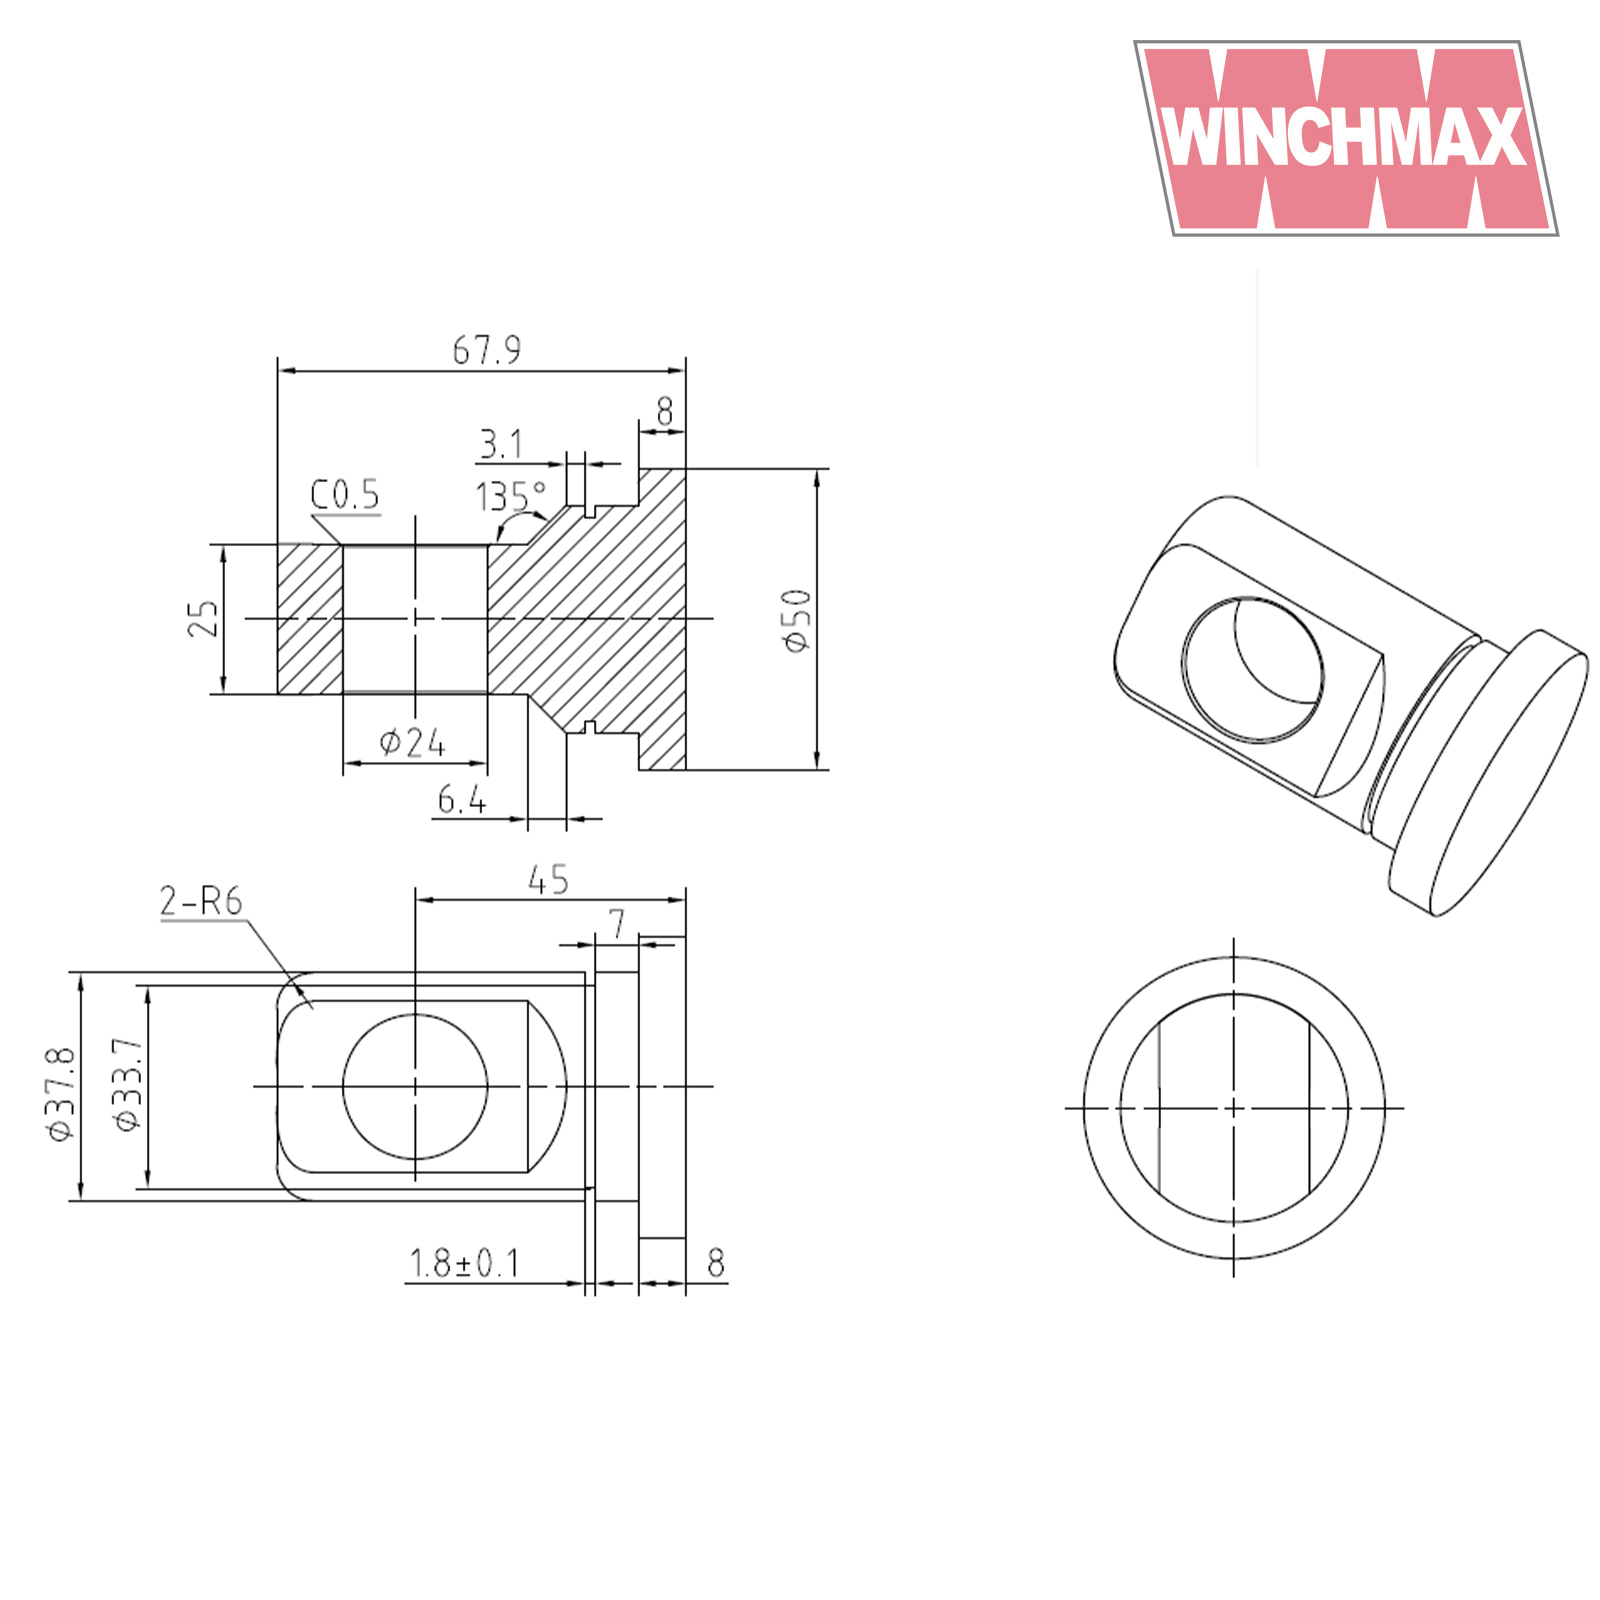 Winchmax 3/4 Inch Swivel Eye for Winch Tech